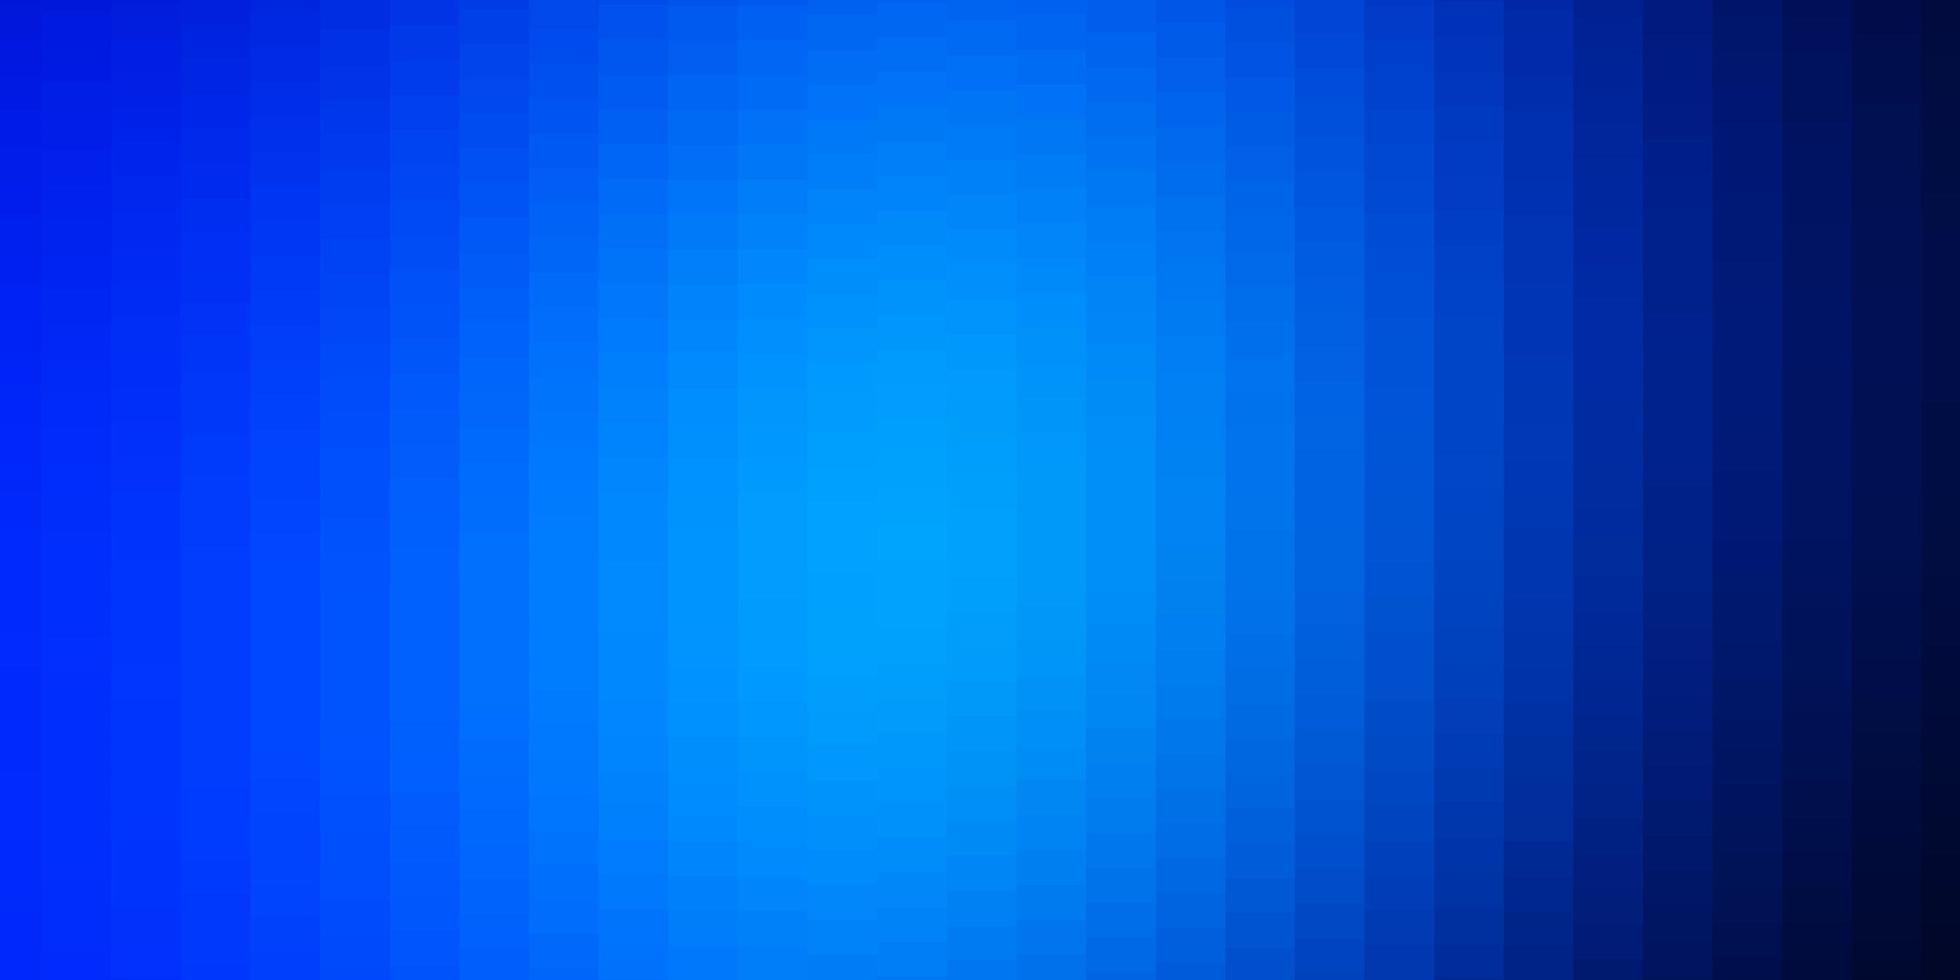 padrão de vetor azul escuro em estilo quadrado. retângulos com gradiente colorido em abstrato. padrão para sites, páginas de destino.